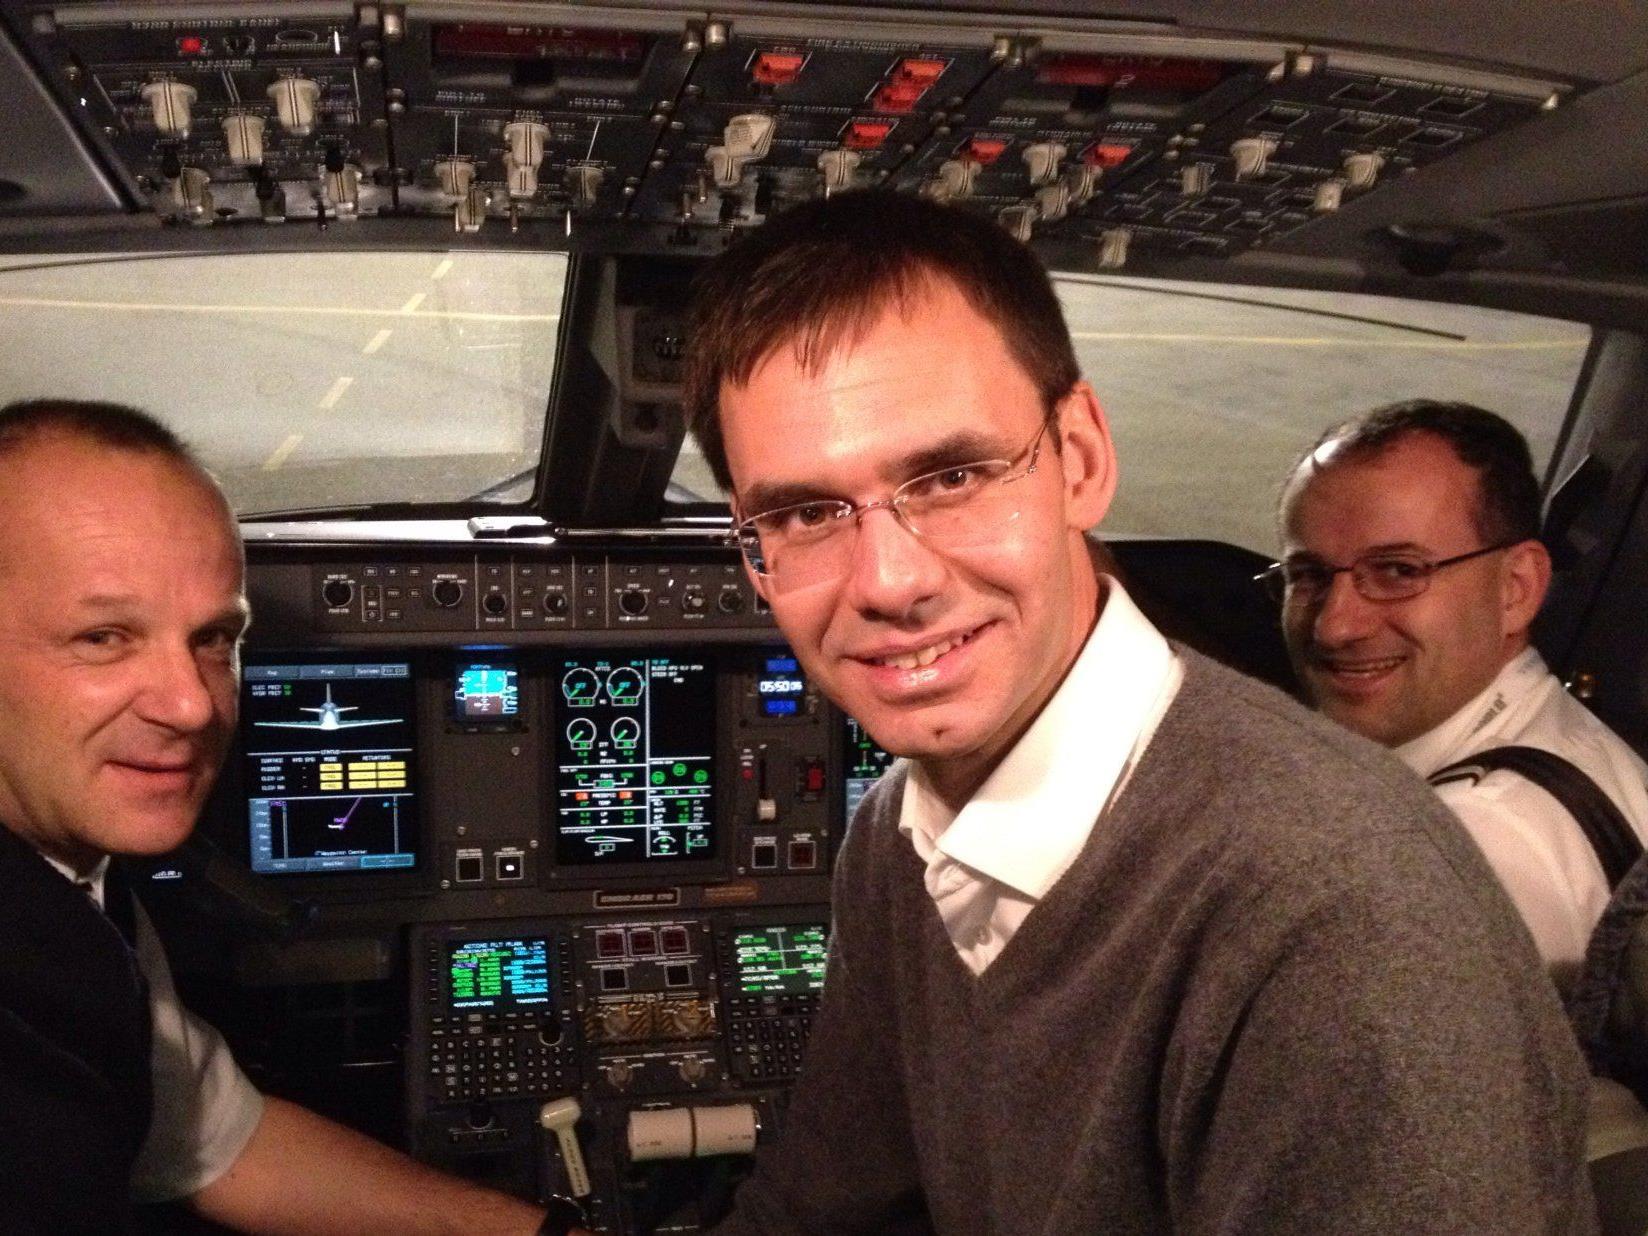 Dieses Archivbild zeigt LH Markus Wallner im Cockpit eines Flugzeuges.